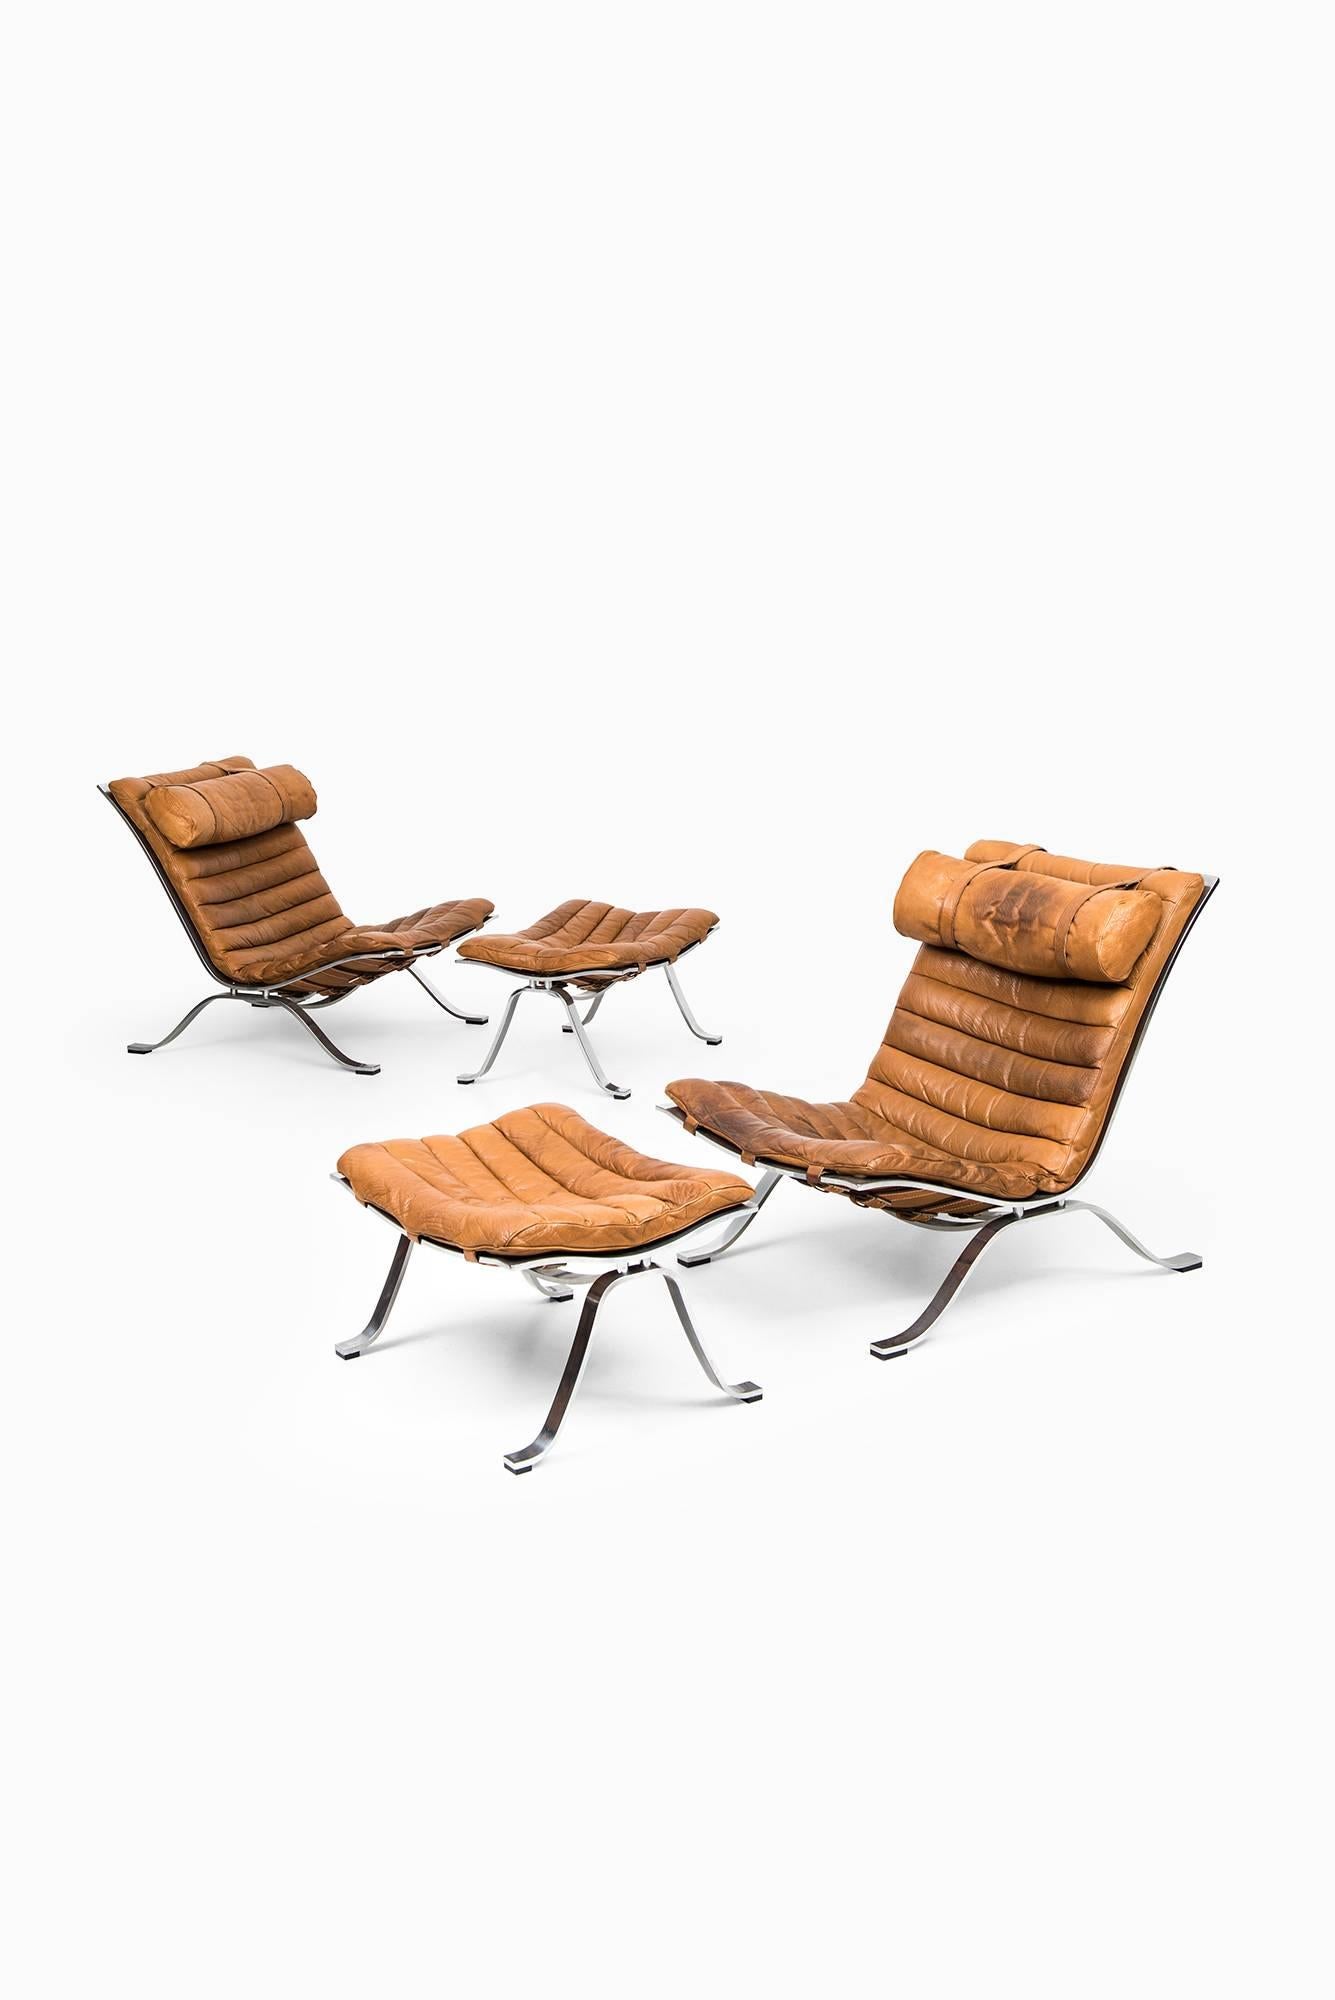 Seltenes Paar Sessel mit Fußhocker Modell Ari entworfen von Arne Norell. Produziert von Arne Norell AB in Aneby, Schweden.